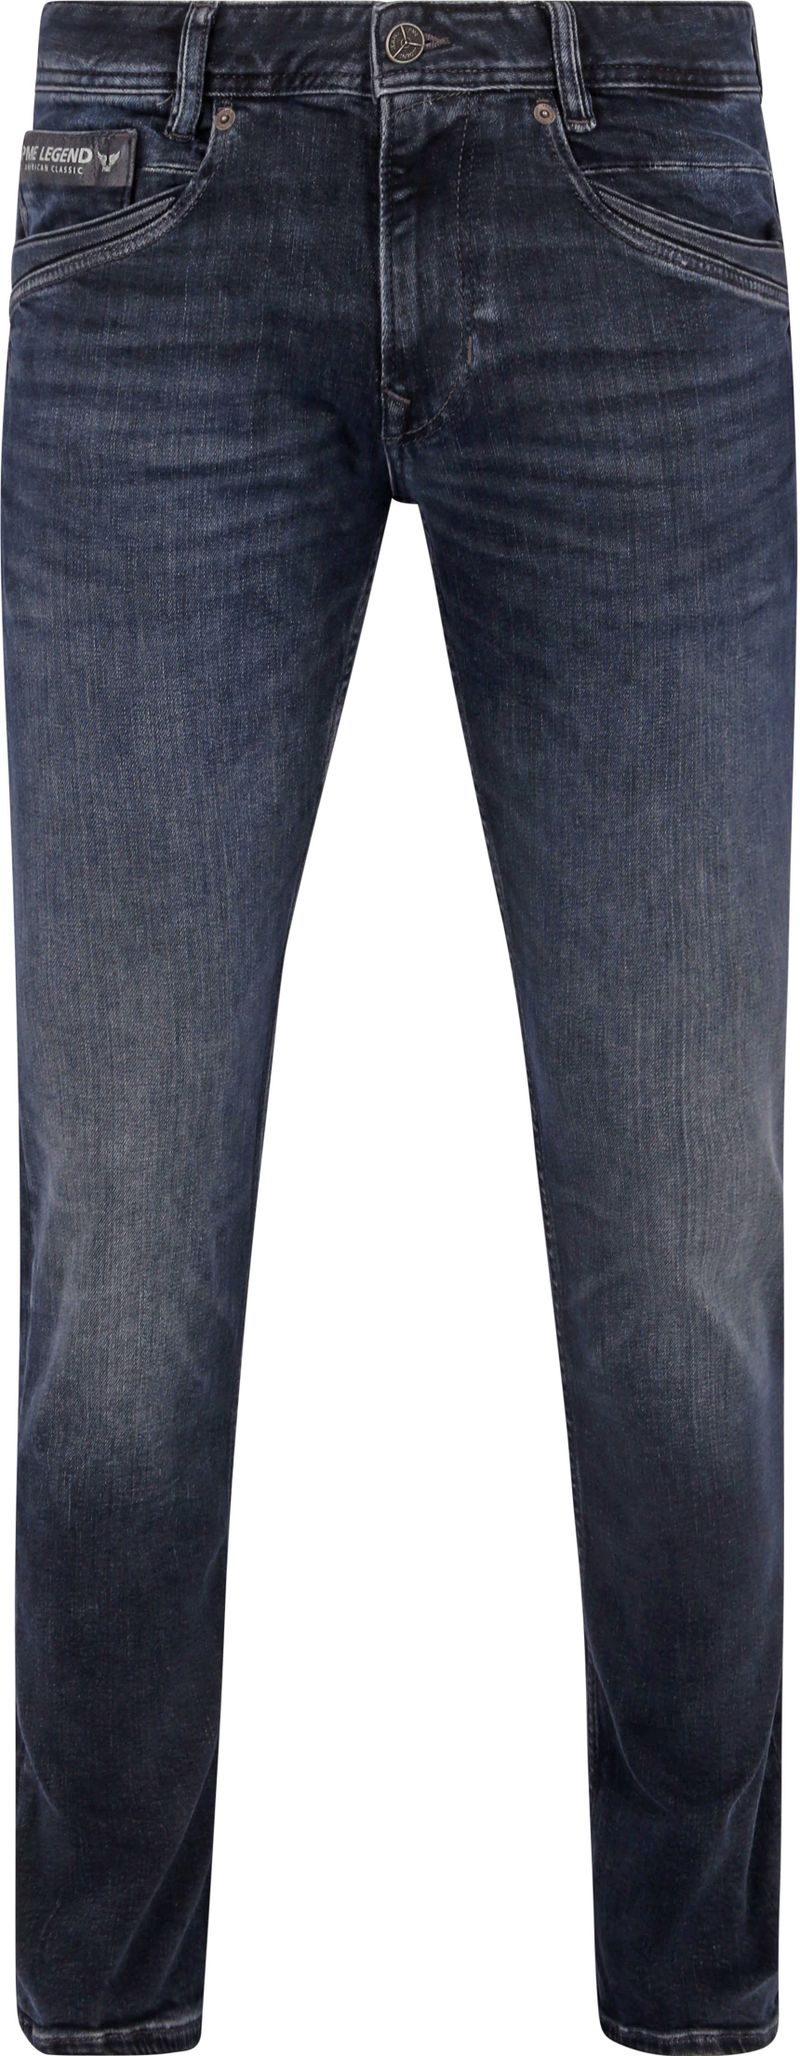 PME Legend Skyrak Jeans Blau DII - Größe W 33 - L 30 günstig online kaufen